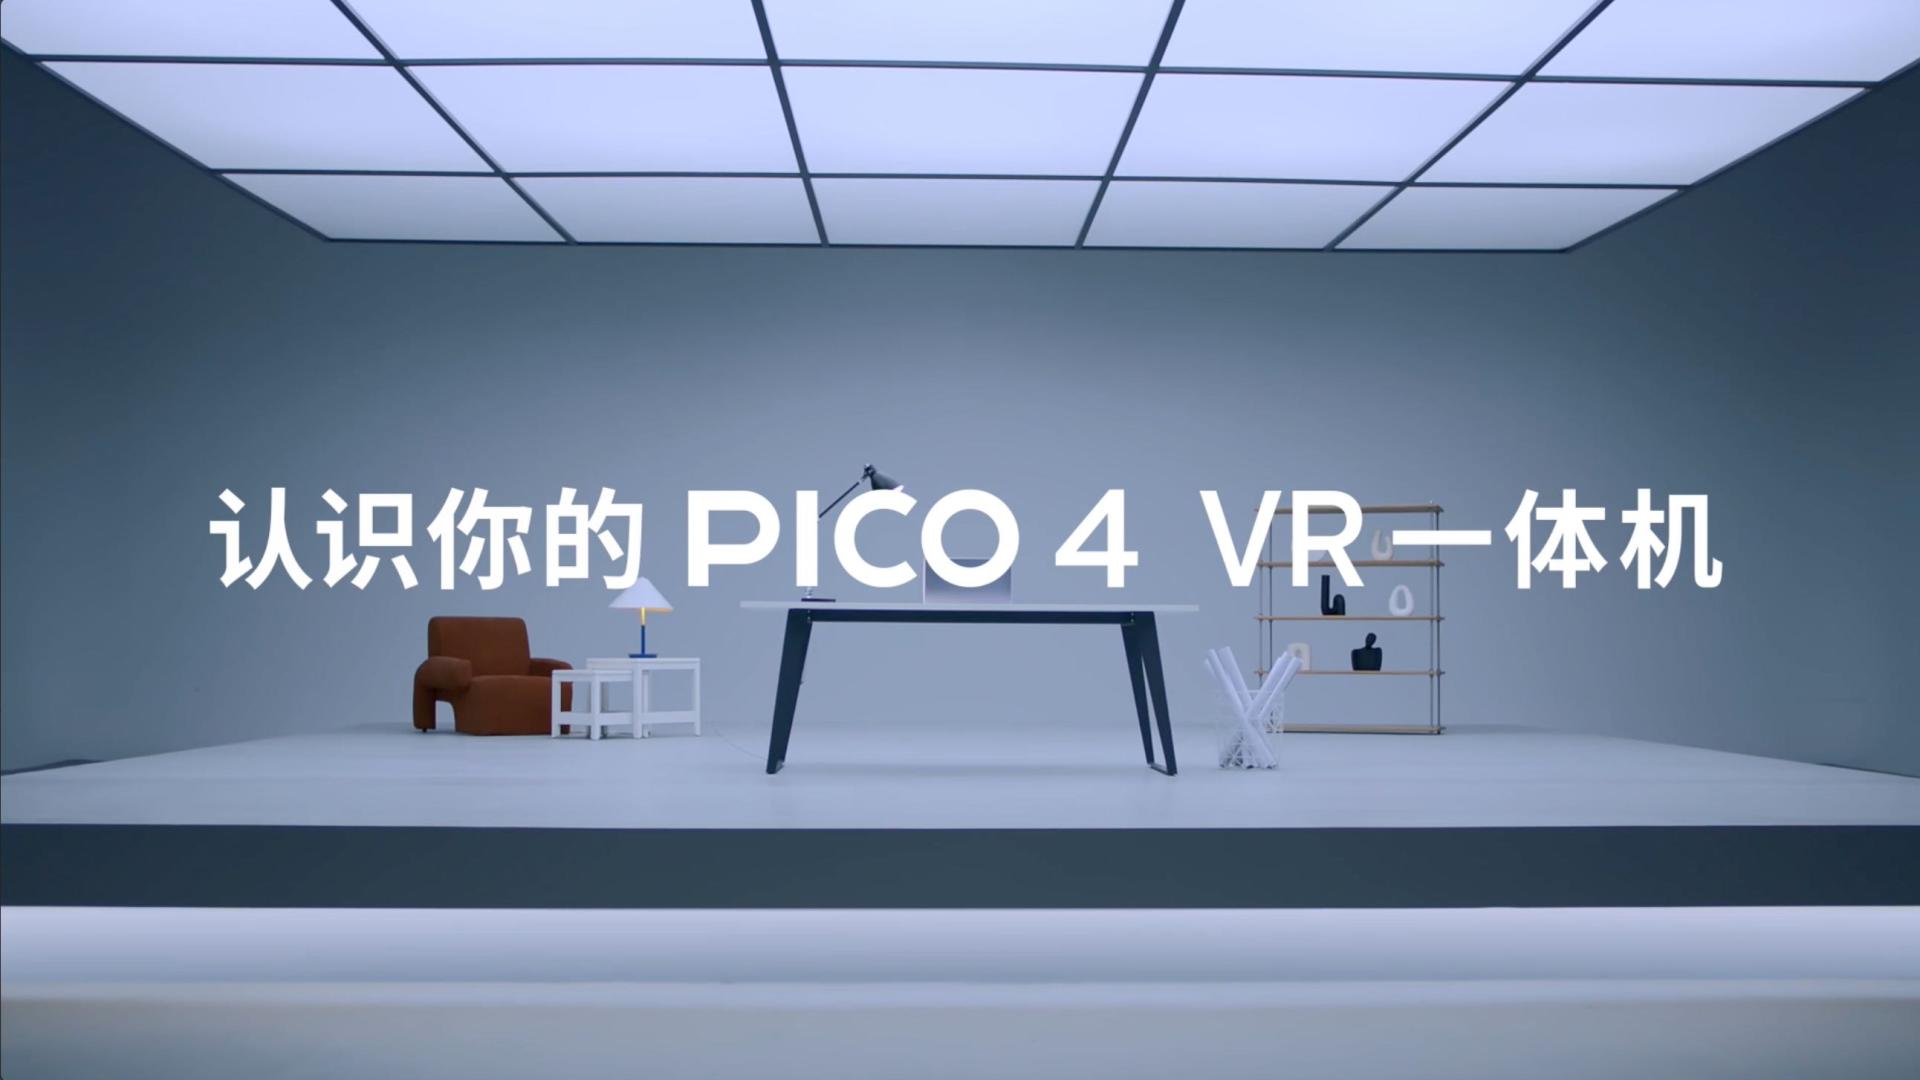 认识你的PICO 4 VR一体机